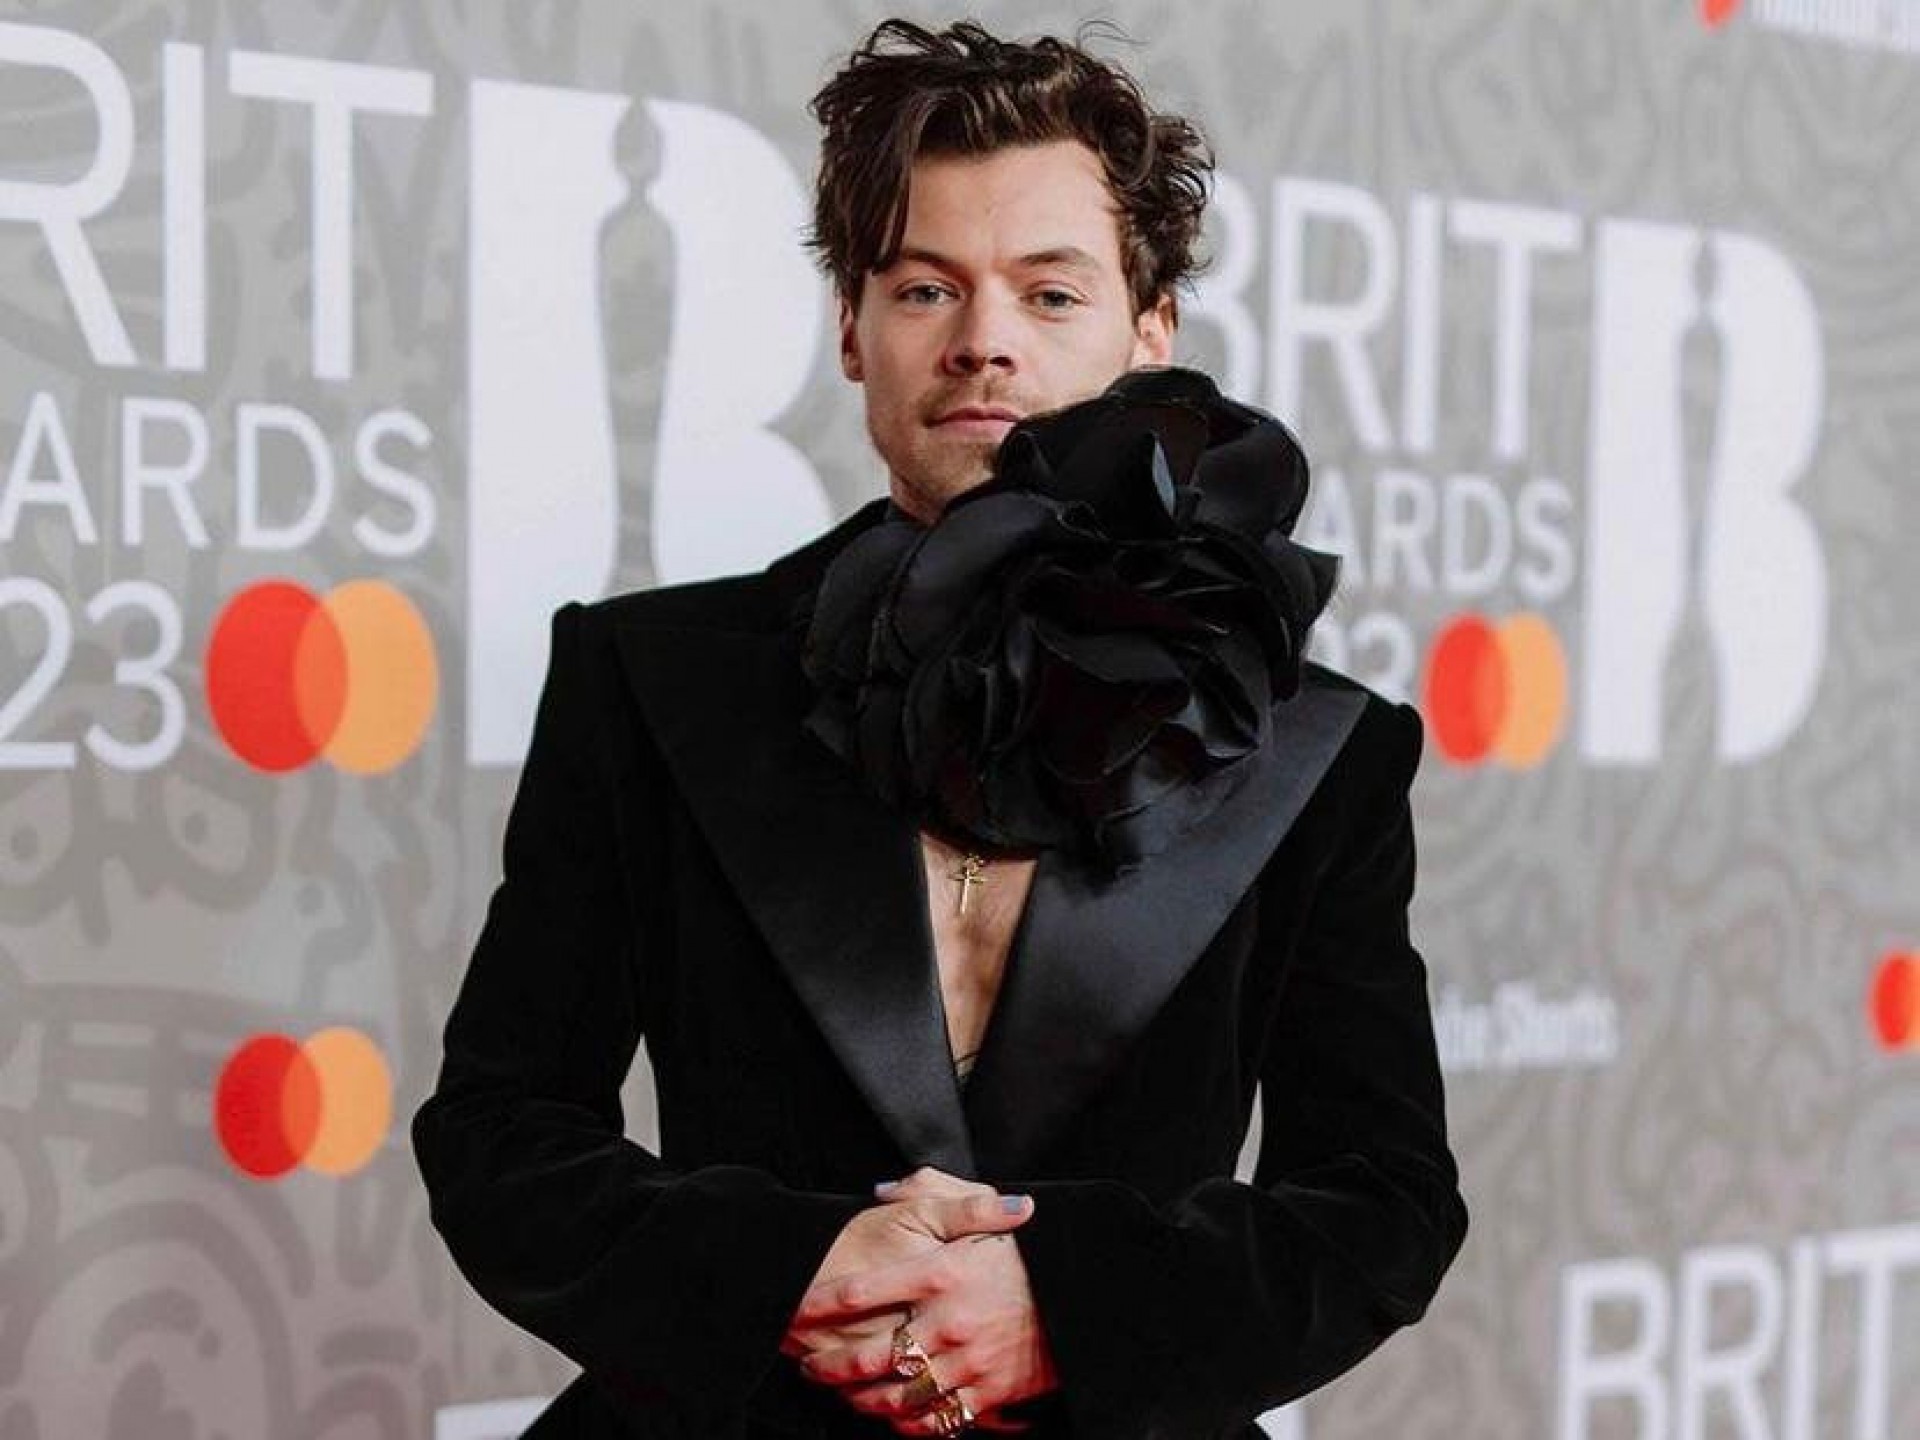 BRIT Awards muda regras de premiação após ver Harry Styles vencedor e R&B  sufocado - Billboard Brasil